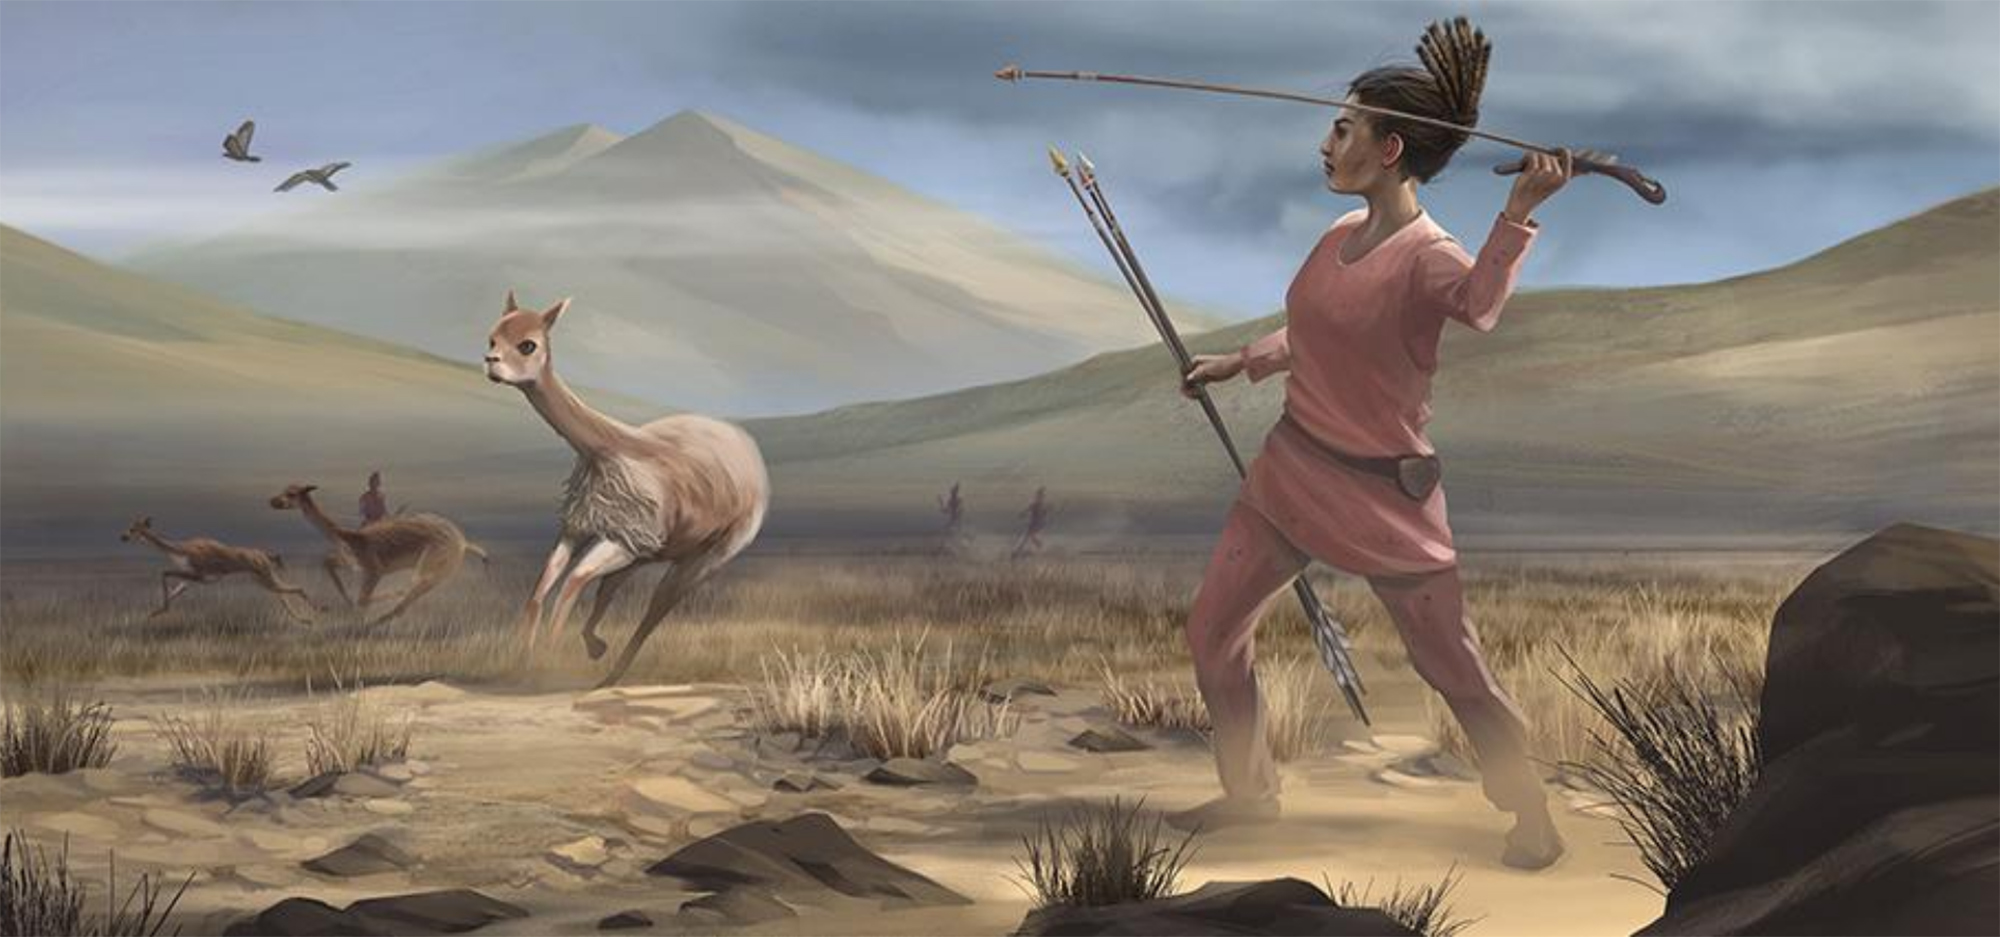 Duela 9.000 urte Andeetako goi-ordokian bizi zen emakume ehiztari baten gaur egungo irudikapena, haren hilobian aurkitutako lanabesetan oinarrituta.